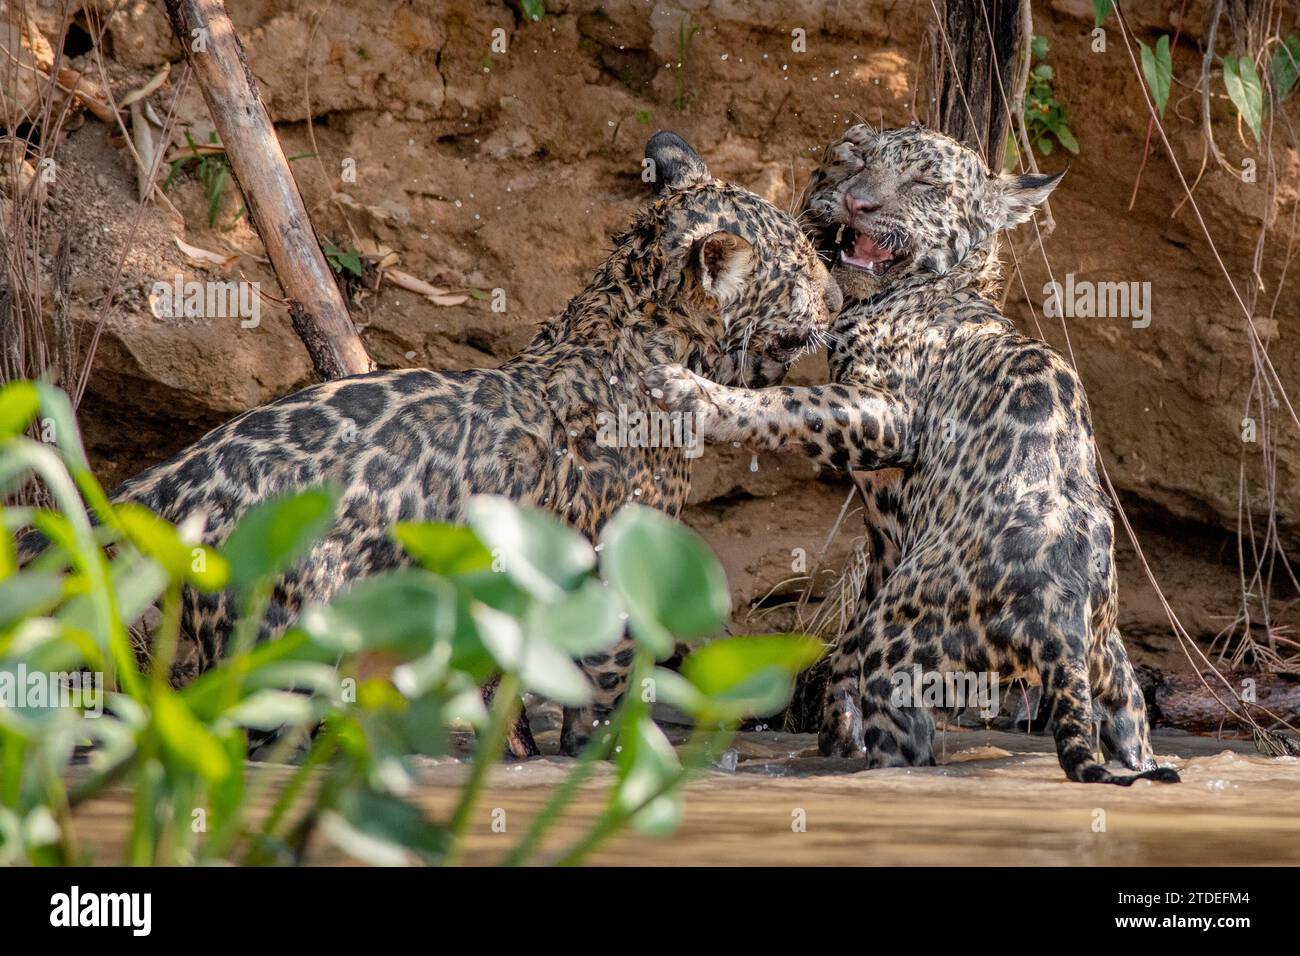 Verspielte jaguar Jungen BRASILIEN COMIC Bilder von zwei jaguar Jungen, die einen playfight genossen und sich das Wasser abschütteln, wurden im Dschungel von BRASILIEN festgehalten Stockfoto